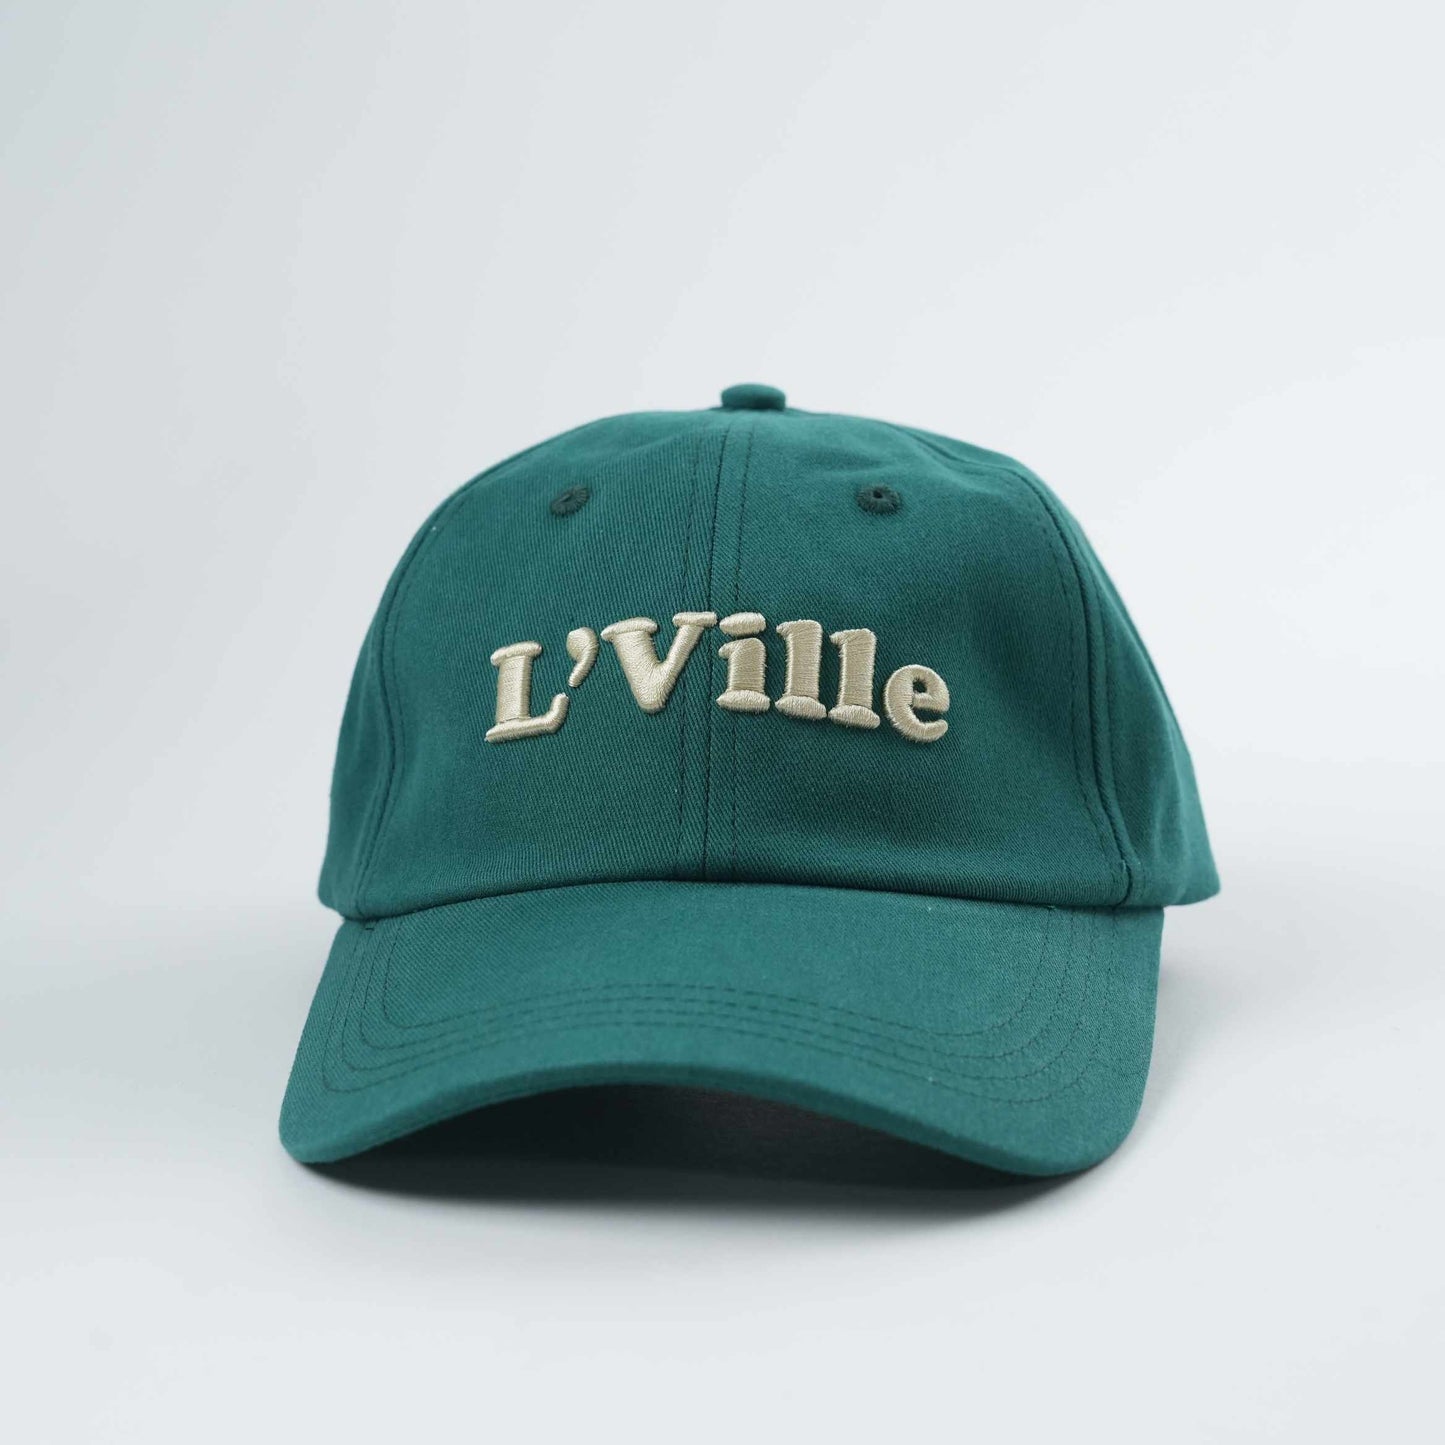 "L' VIlle" Classic Baseball Cap